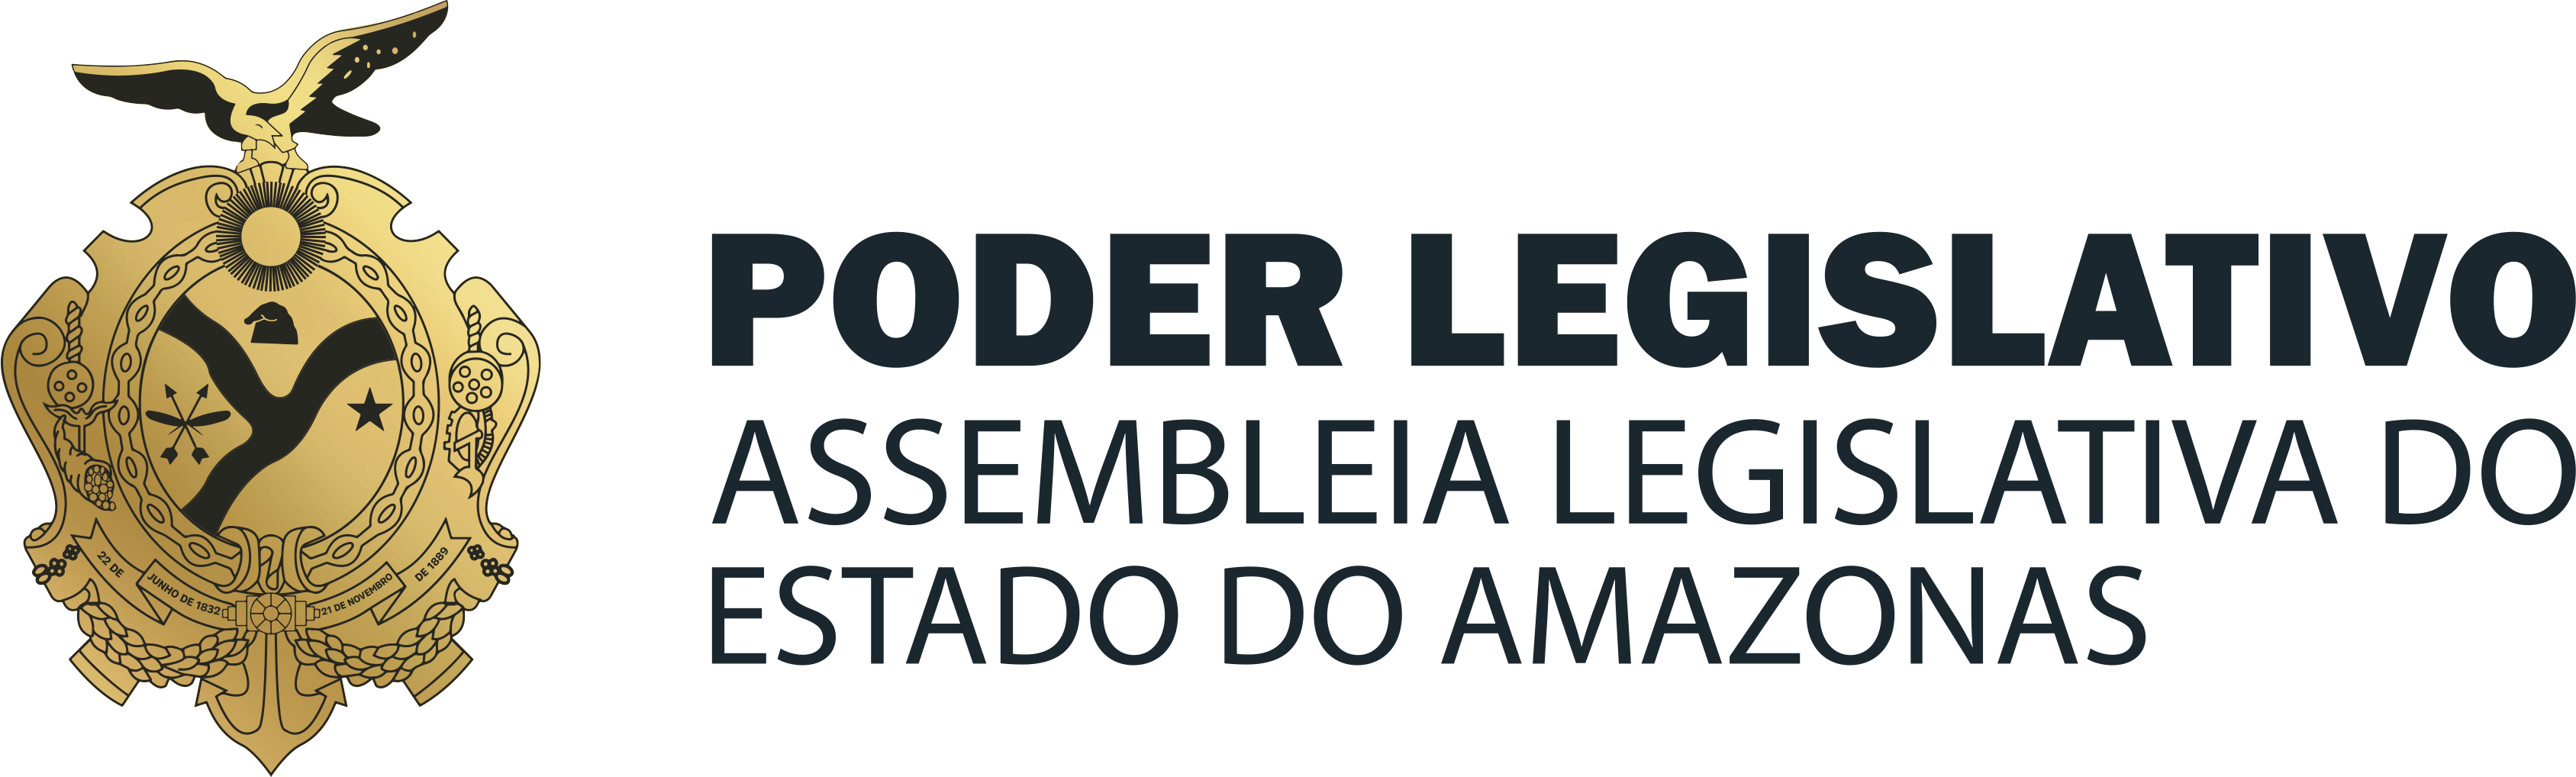 Assembleia Legislativa do Amazonas